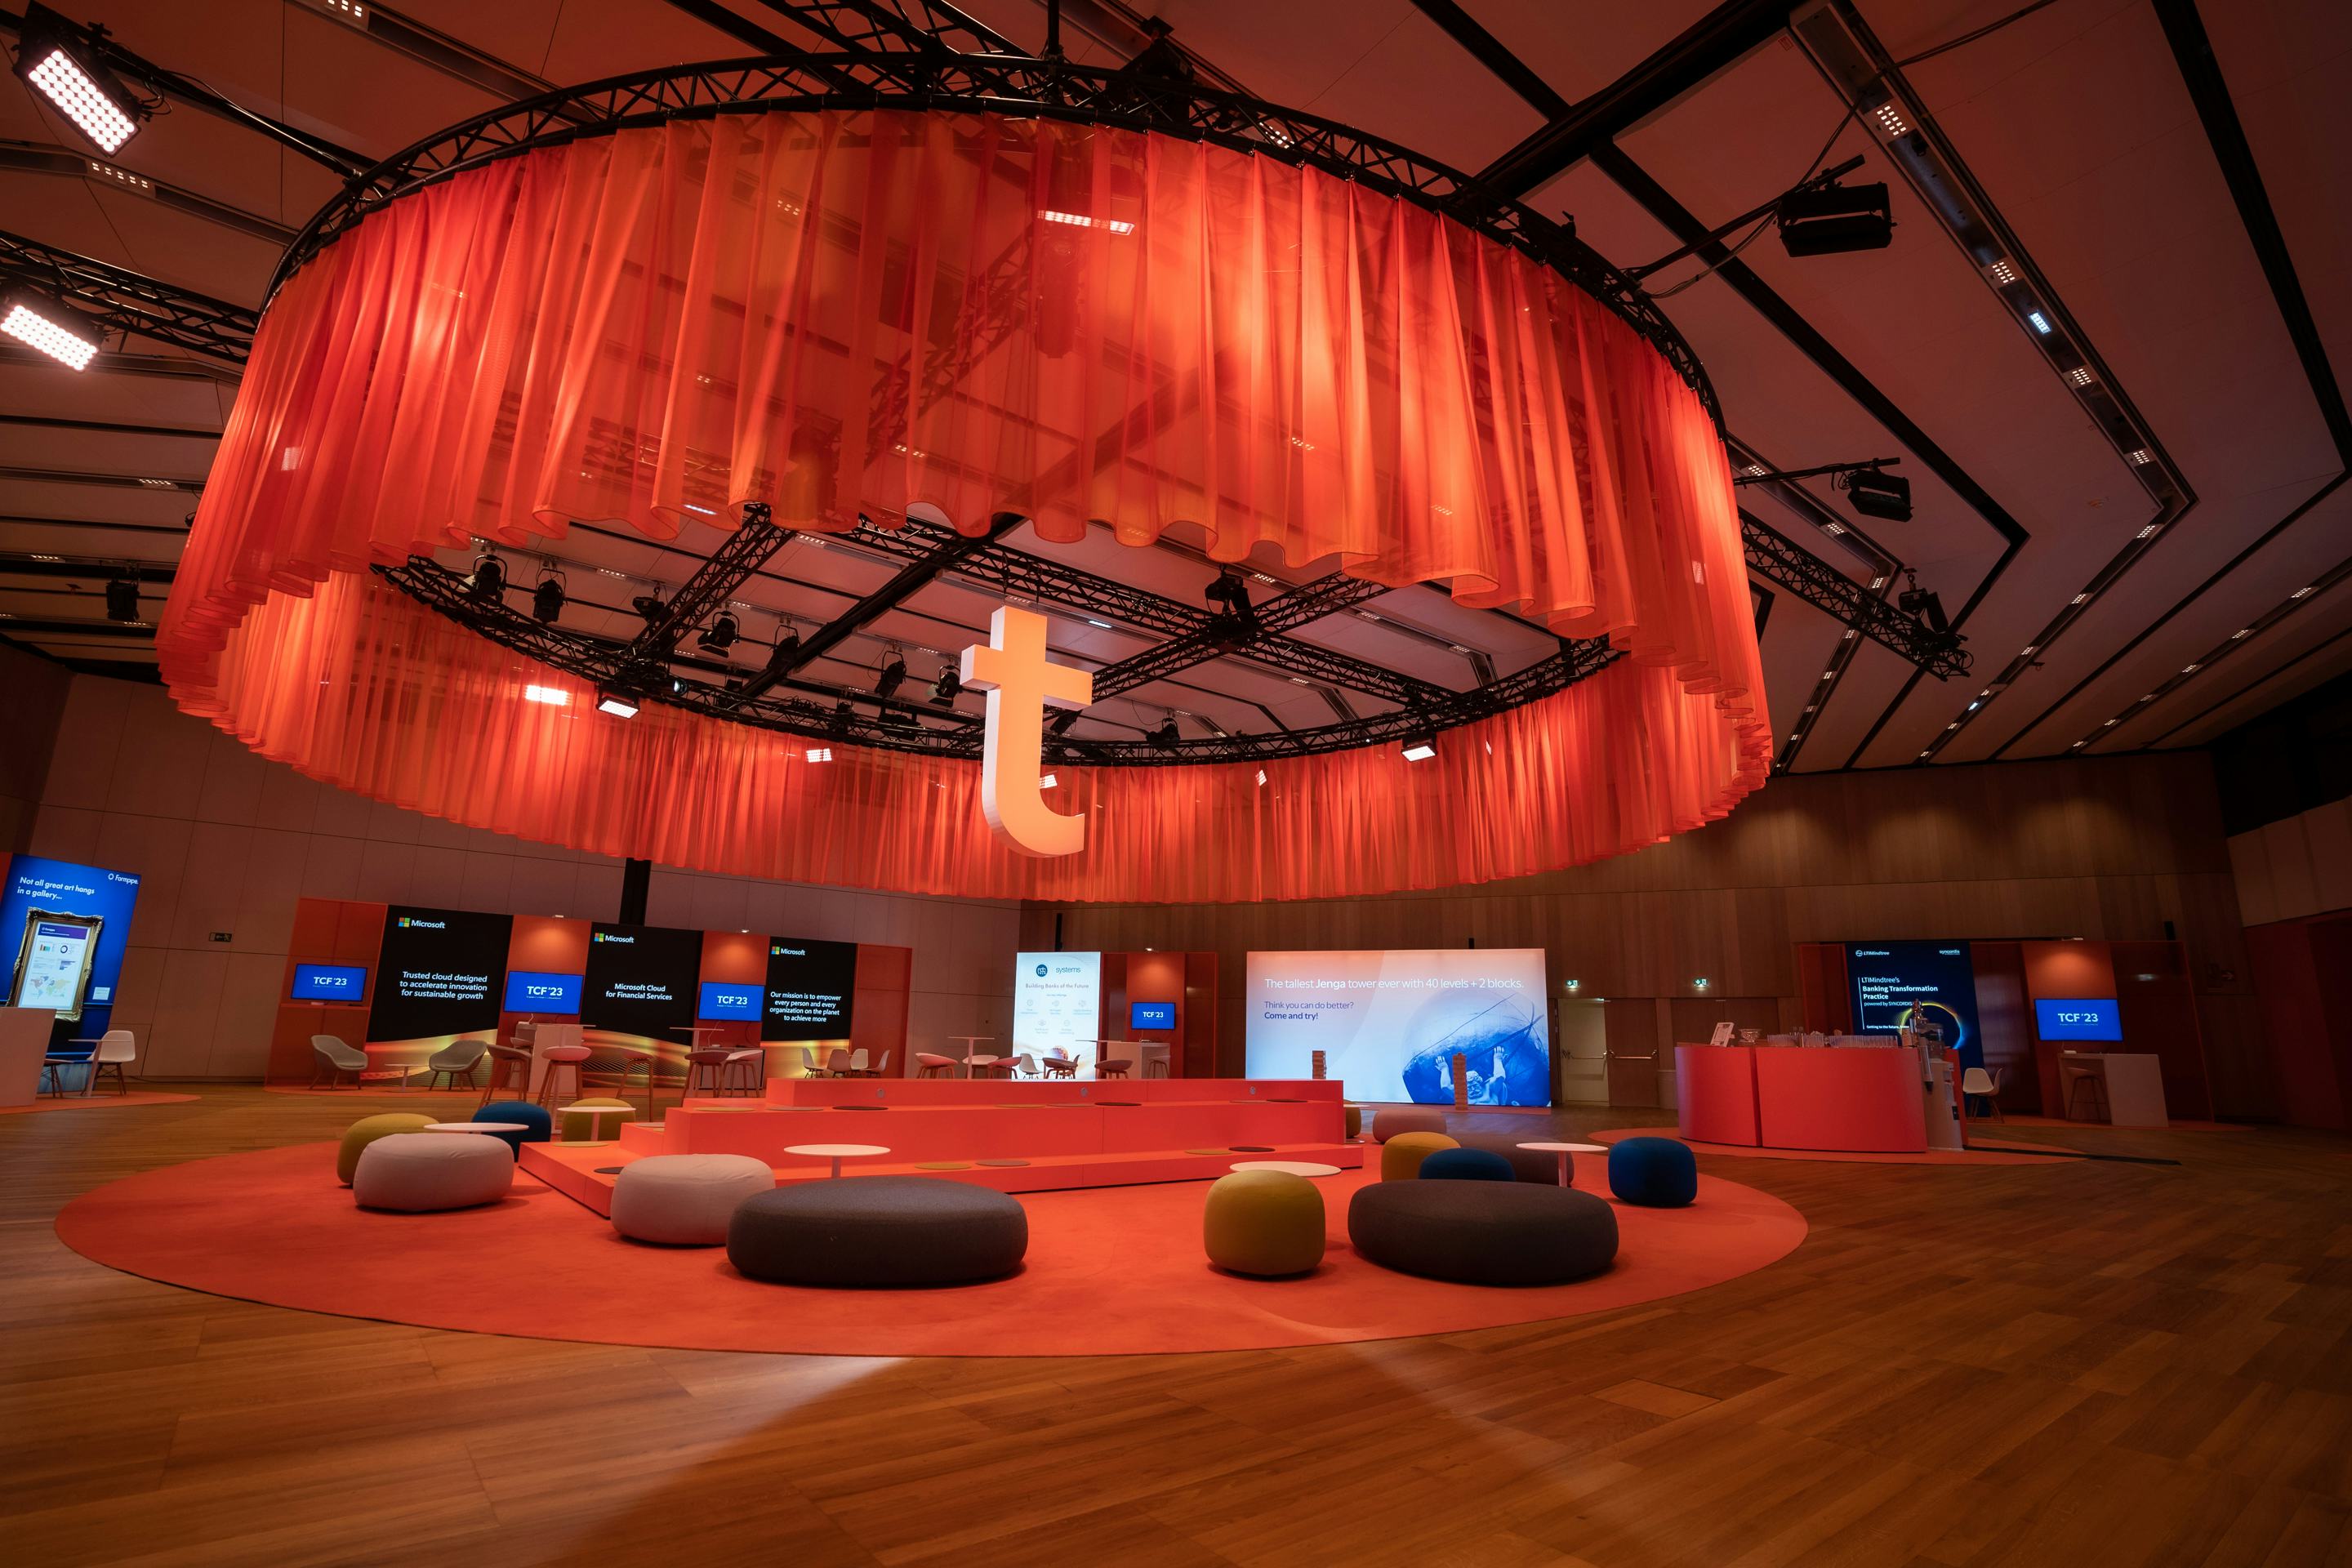 Foto: Raum mit rotem Decken-Vorhang, Networking-Bereichen und beleuchteten Screens